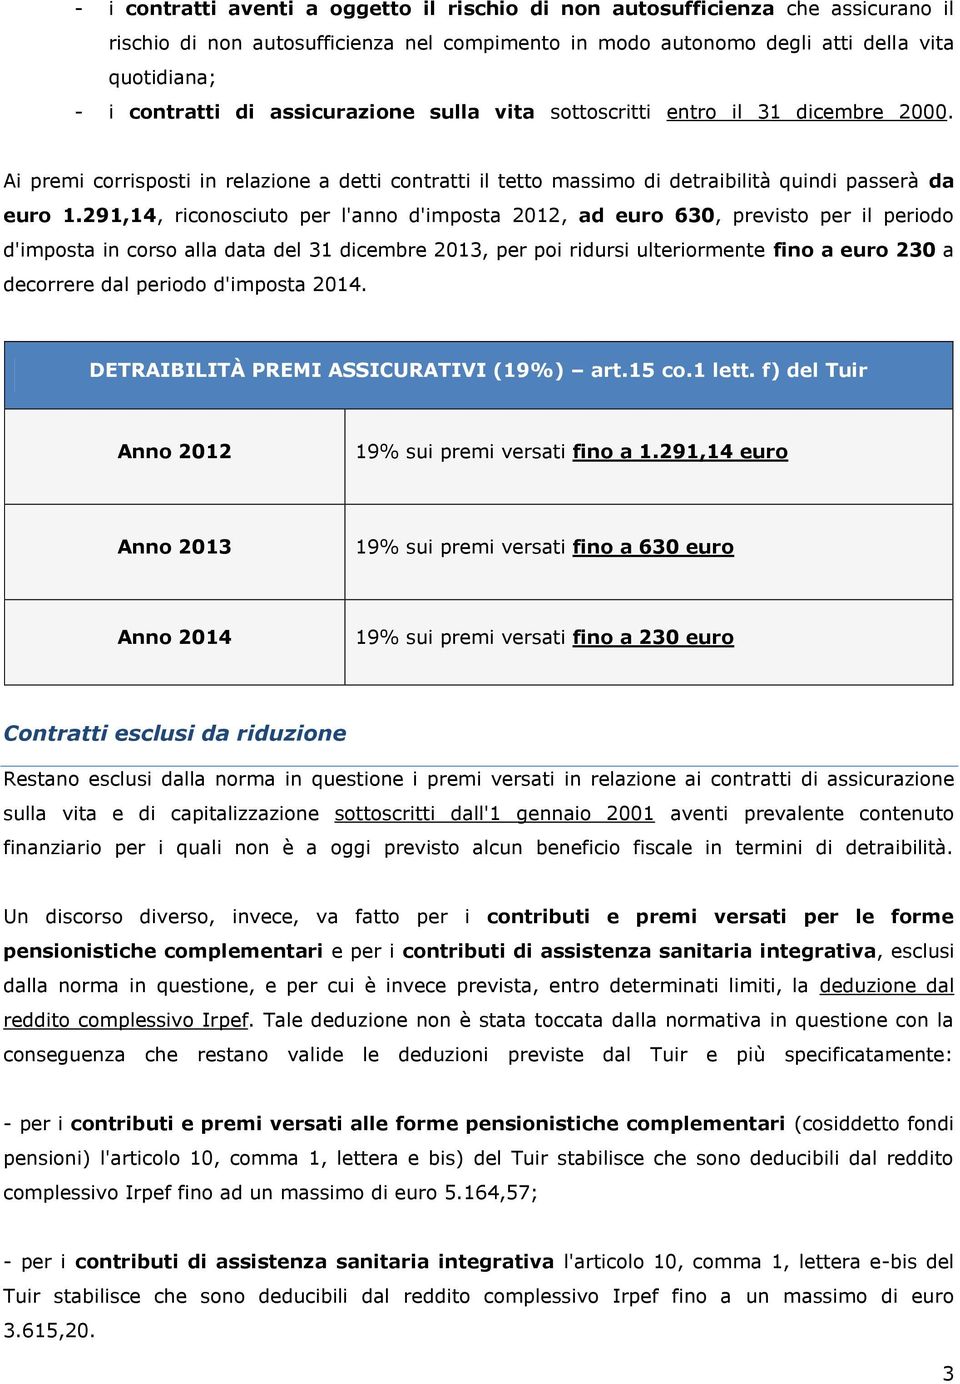 291,14, riconosciuto per l'anno d'imposta 2012, ad euro 630, previsto per il periodo d'imposta in corso alla data del 31 dicembre 2013, per poi ridursi ulteriormente fino a euro 230 a decorrere dal